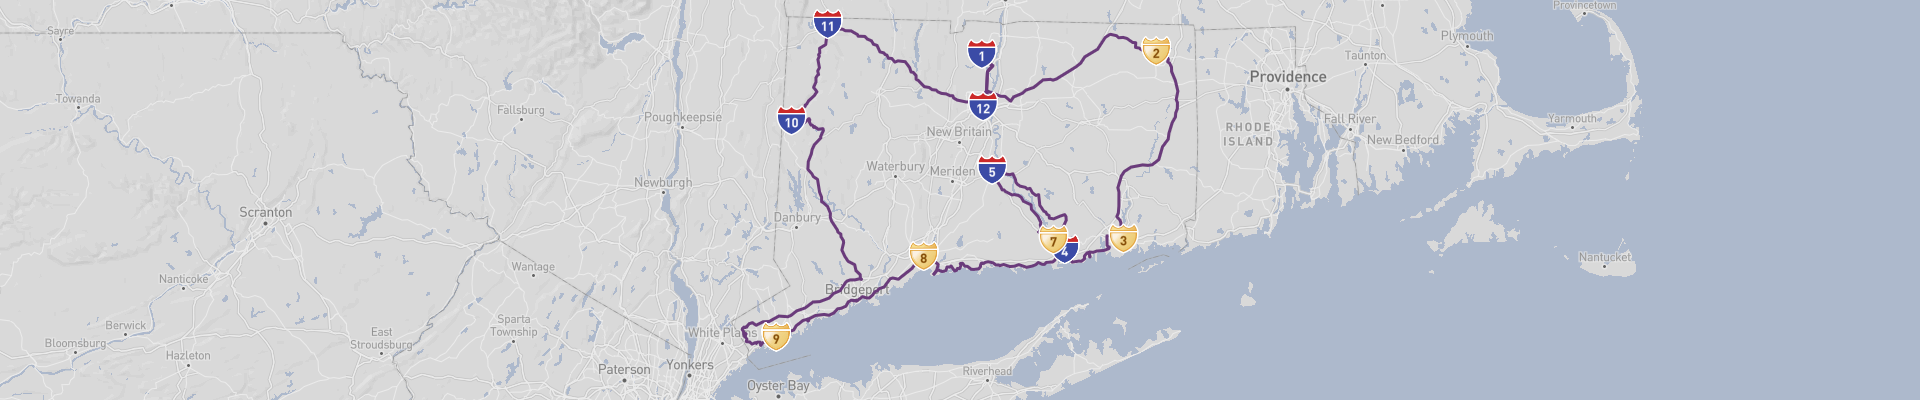 Itinéraire Connecticut 